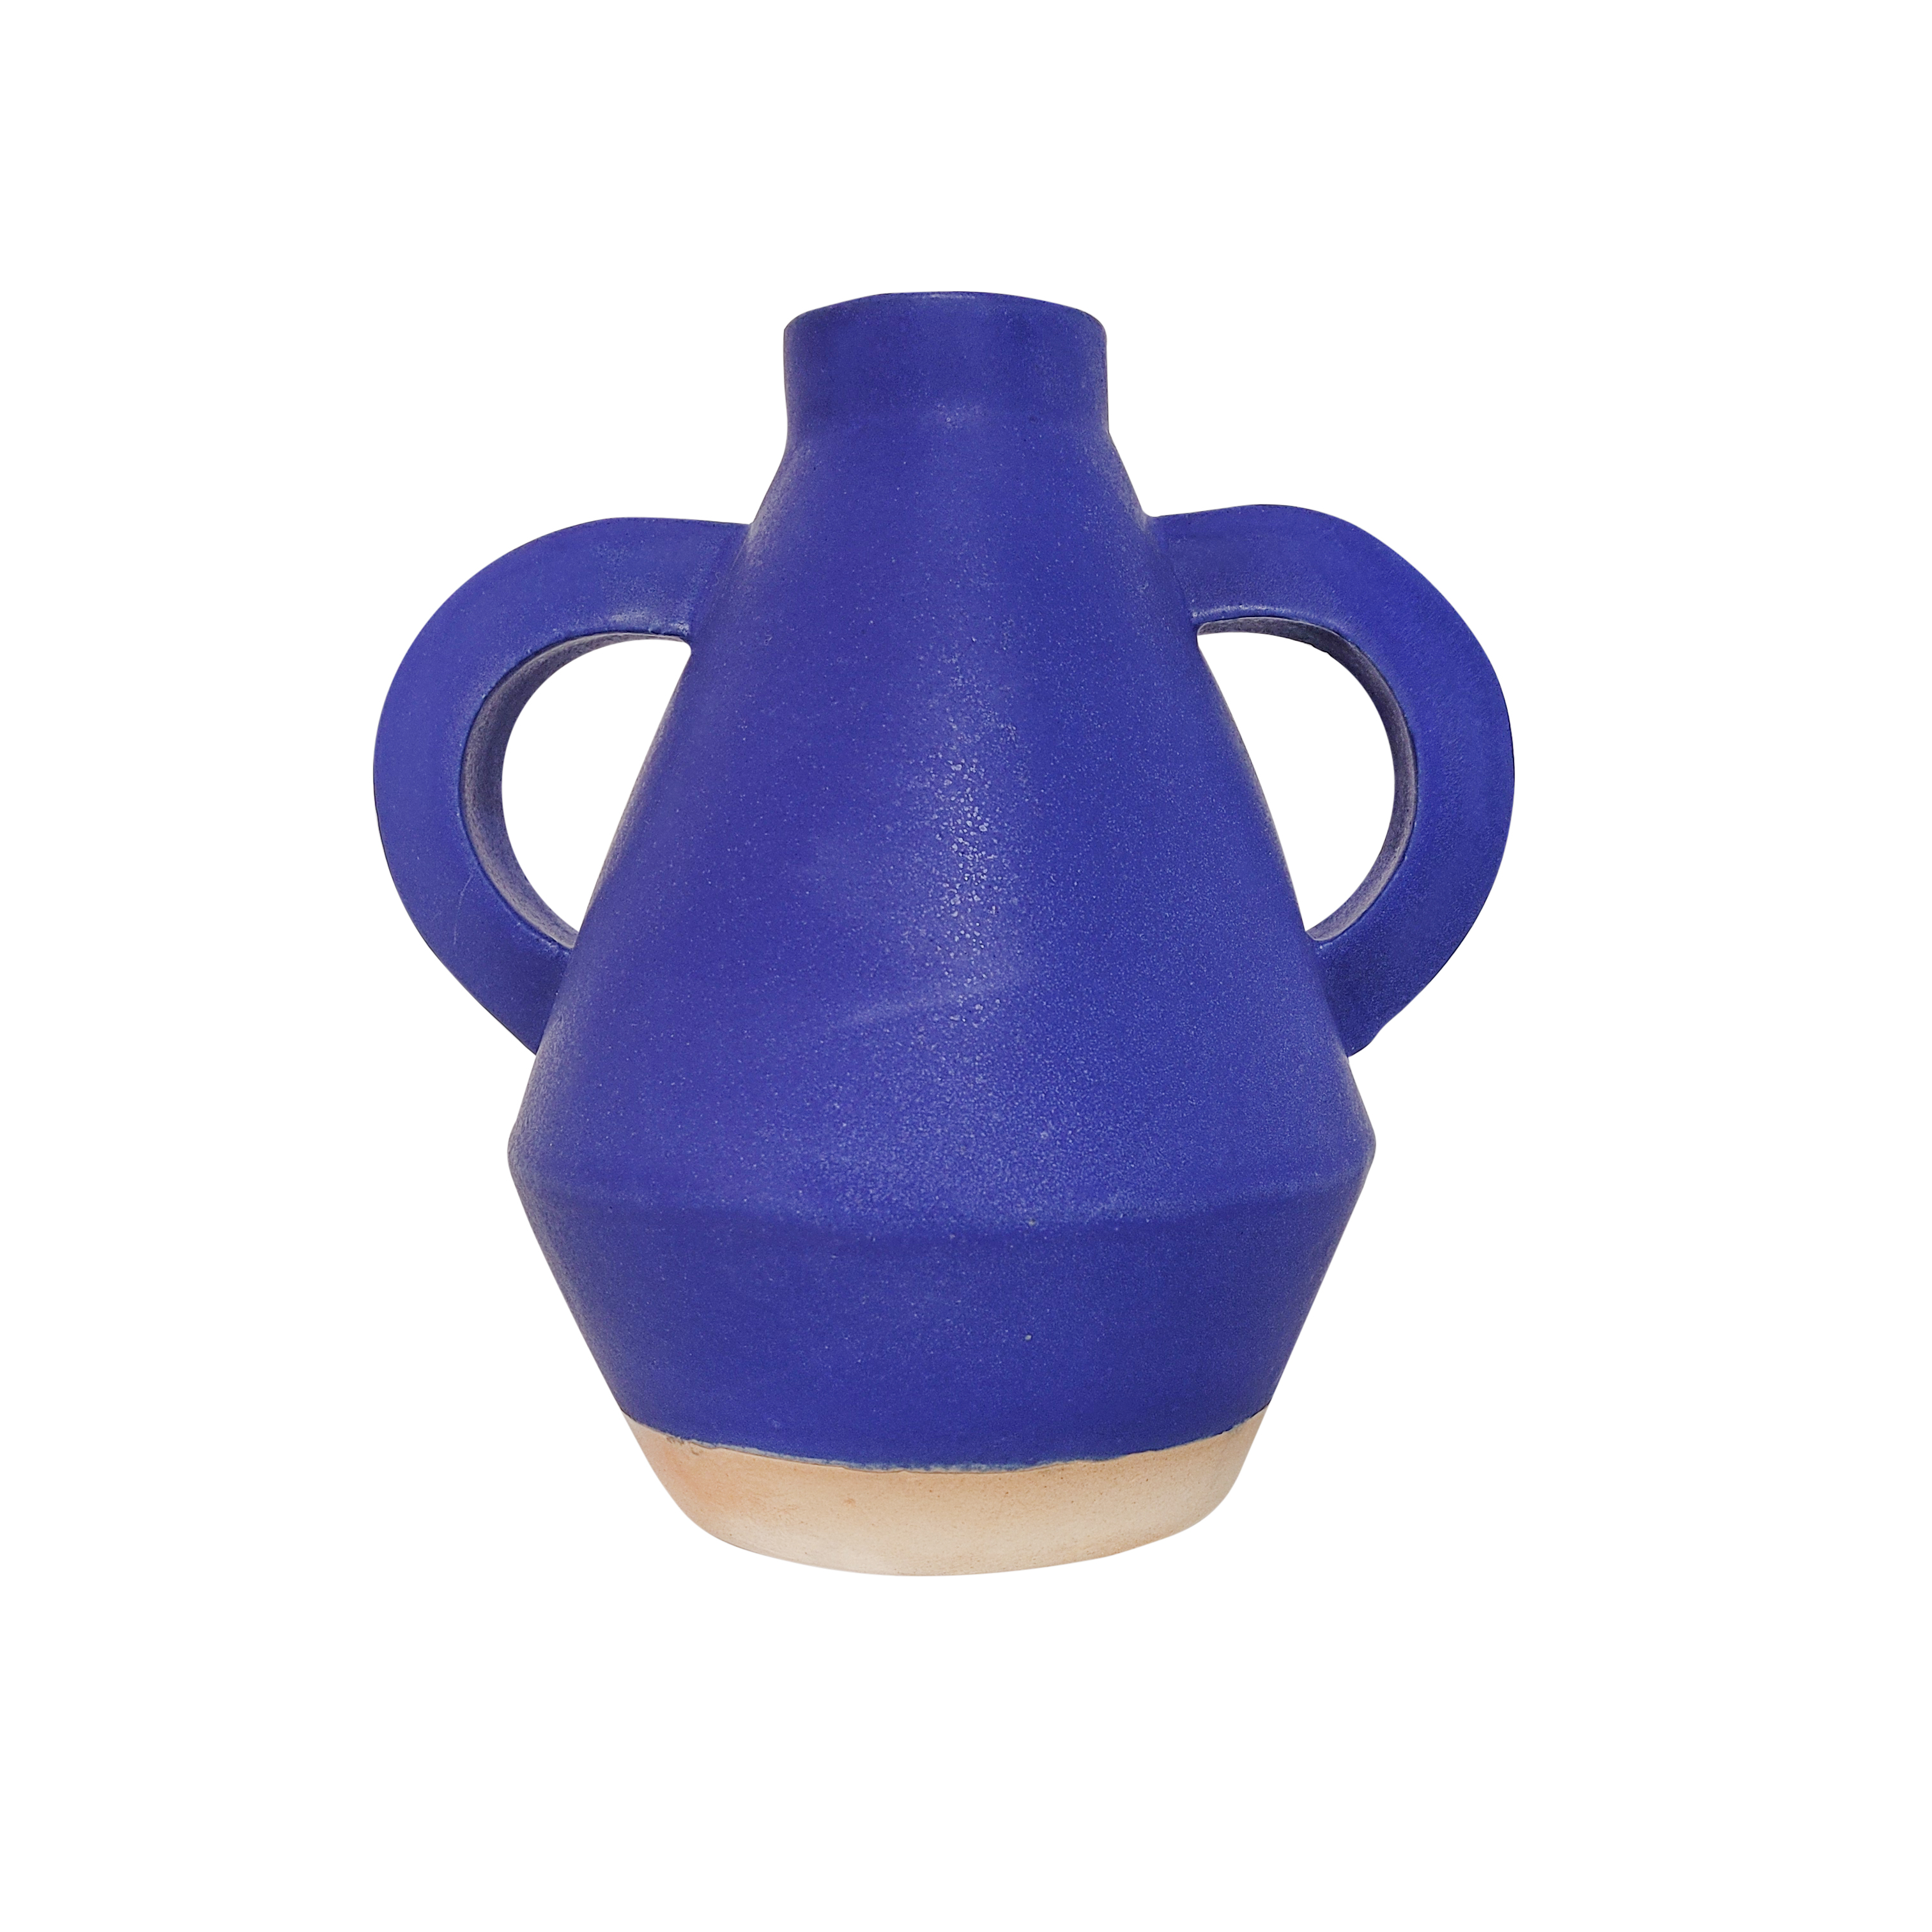 Sophie Alda Jumbo Handled Blue Diamond Vase 